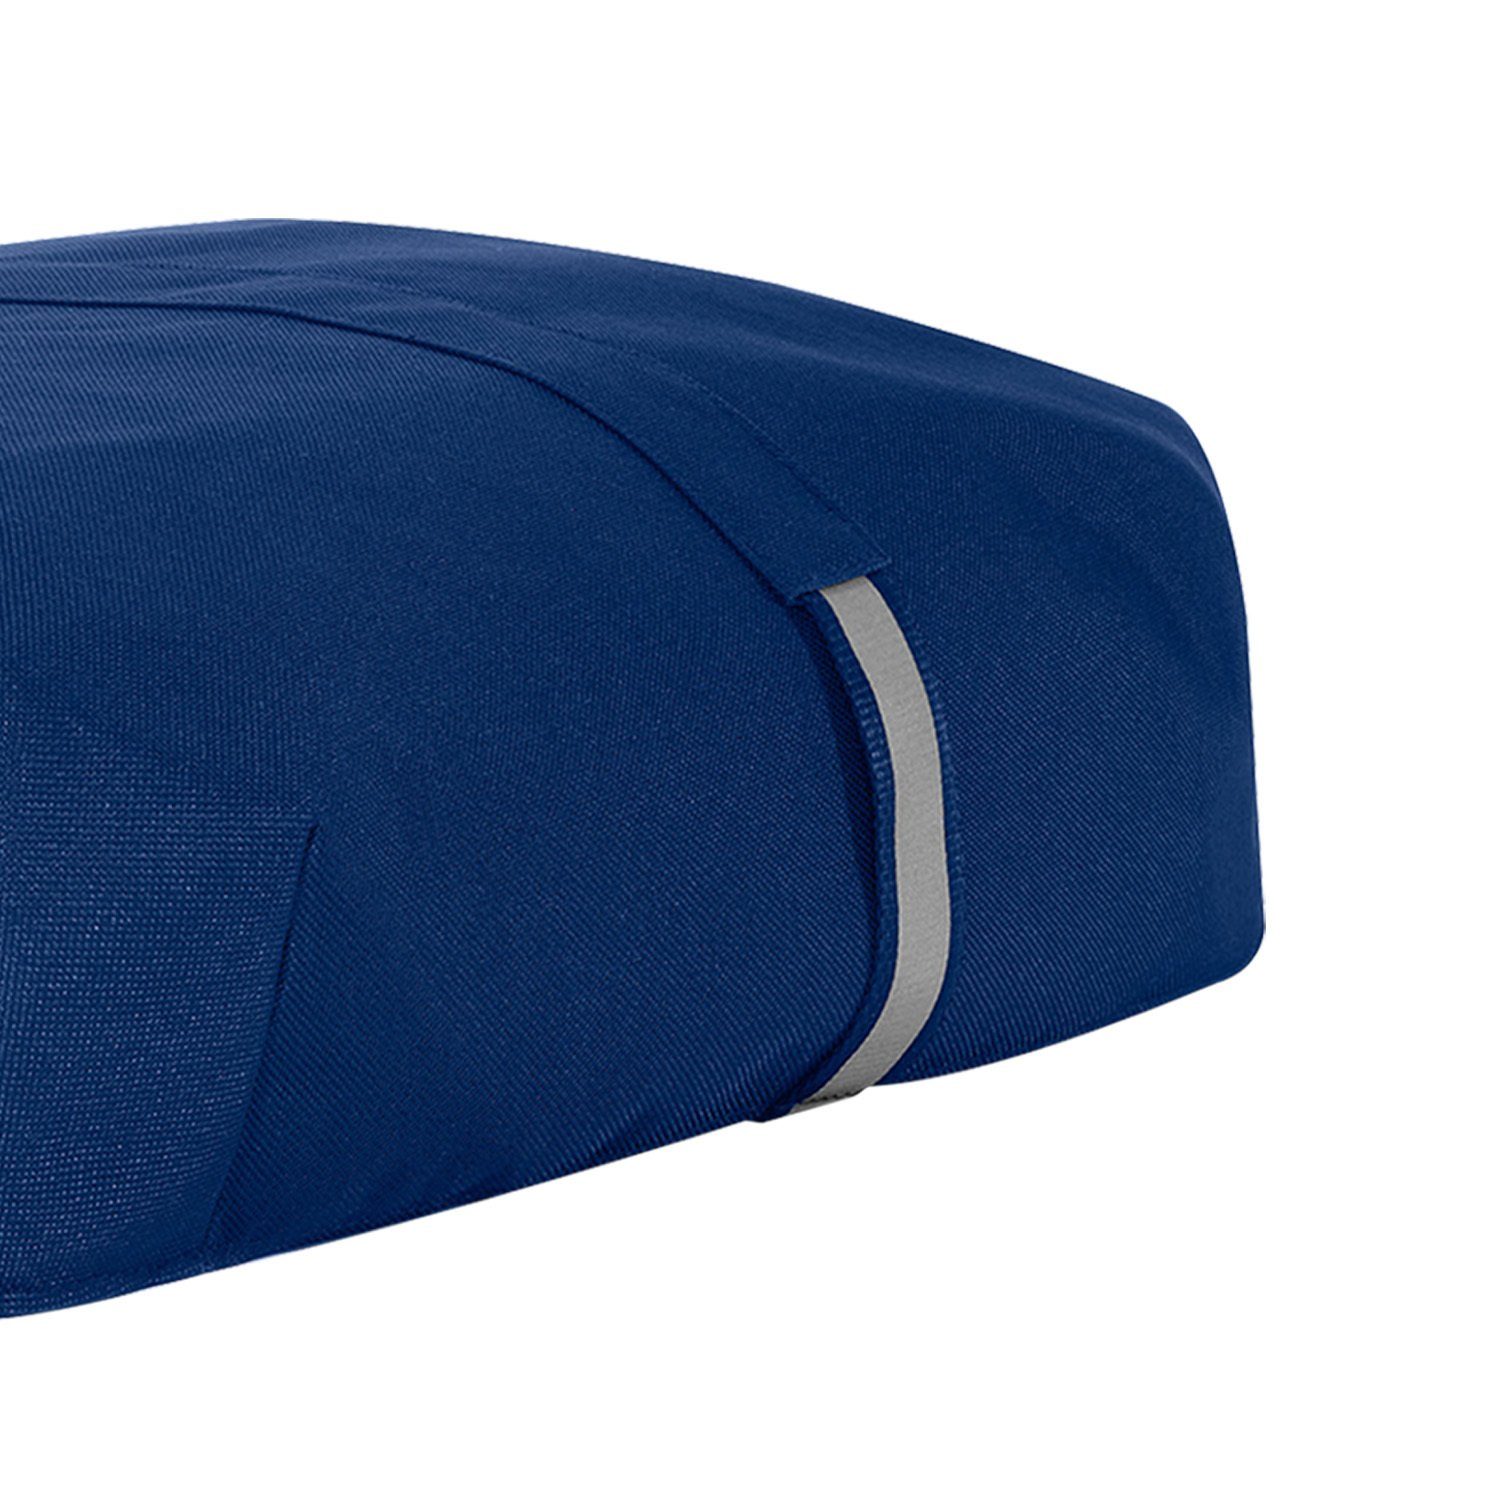 REISENTHEL® Einkaufstrolley Cover navy Abdeckung carrybag Wetterschutz Auswahl Schutzhülle 